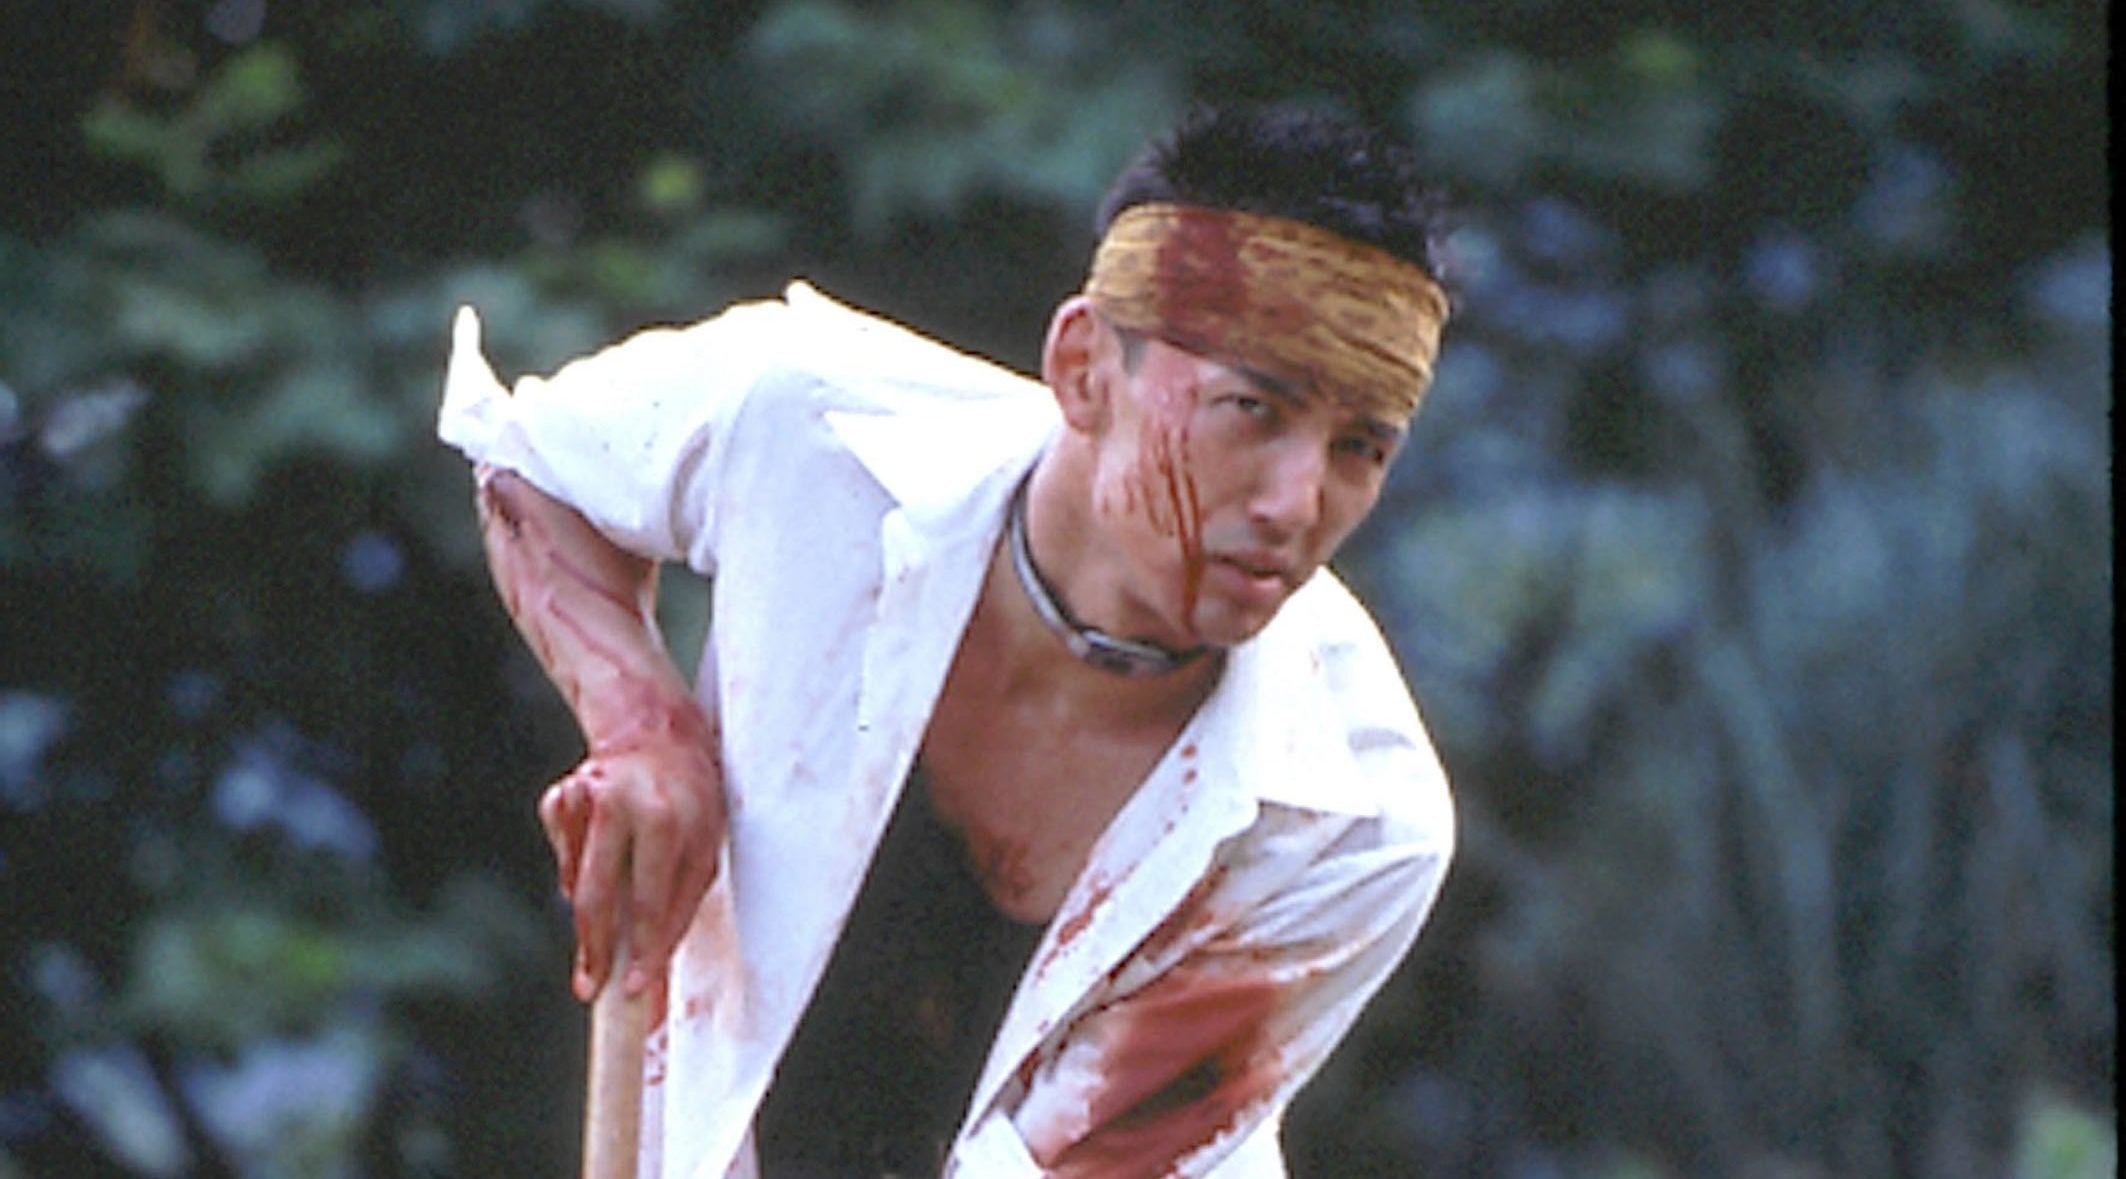 A bloodied Taro Yamamoto stumbles while holding a walking stick